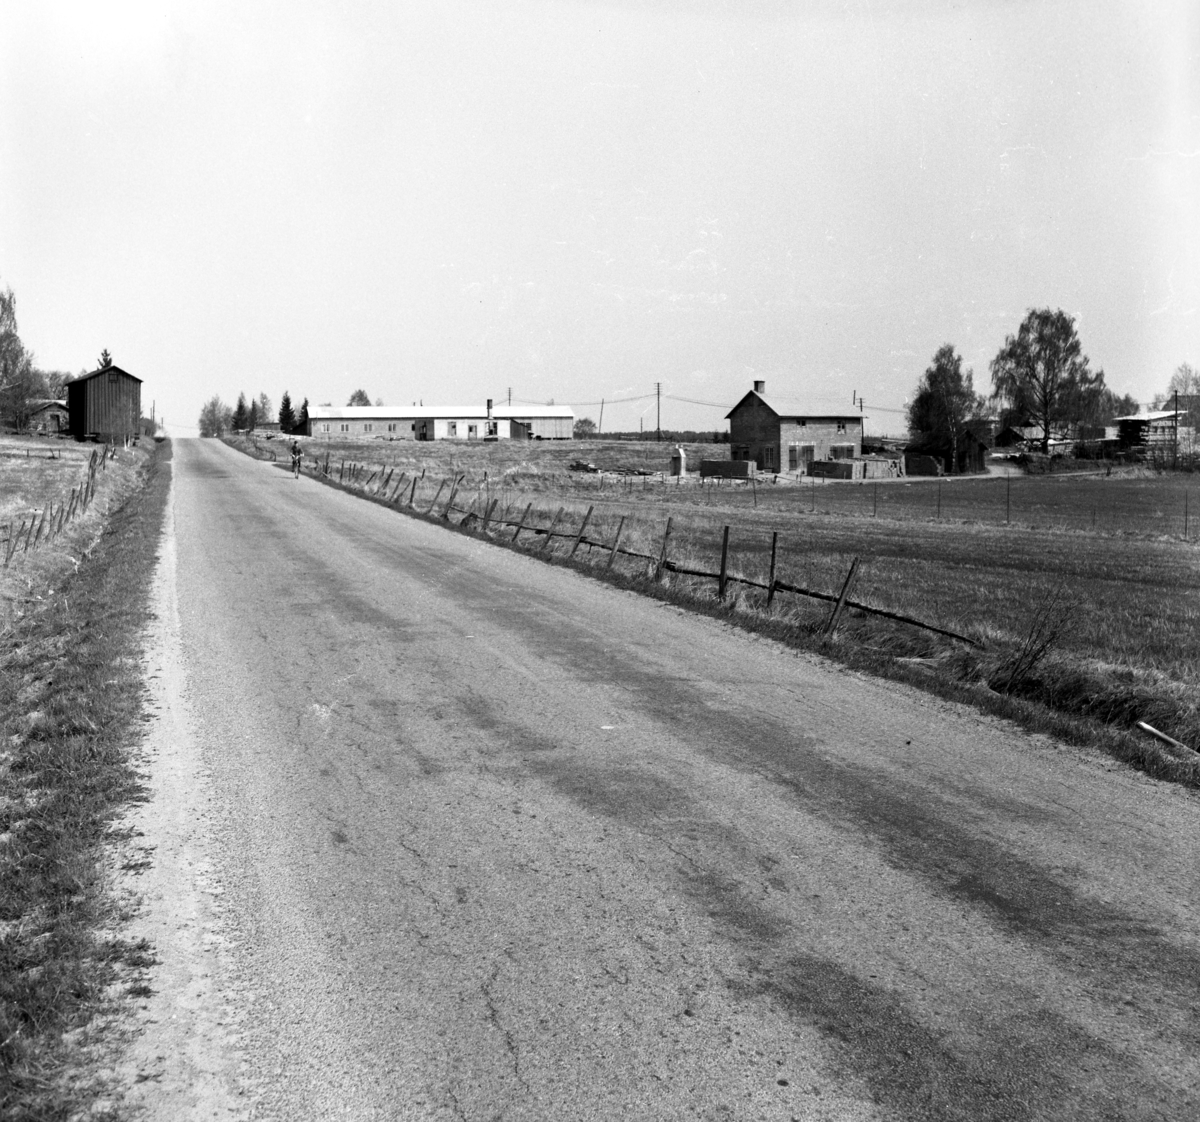 Någonstans i Värmland - från slutet av 1950-talet: Forshaga.
Byggnaden i bakgrunden till vänster om vägen är Grosssbolsmagasinet som numera återfinns på hembygdsgårtden Bråtarna.